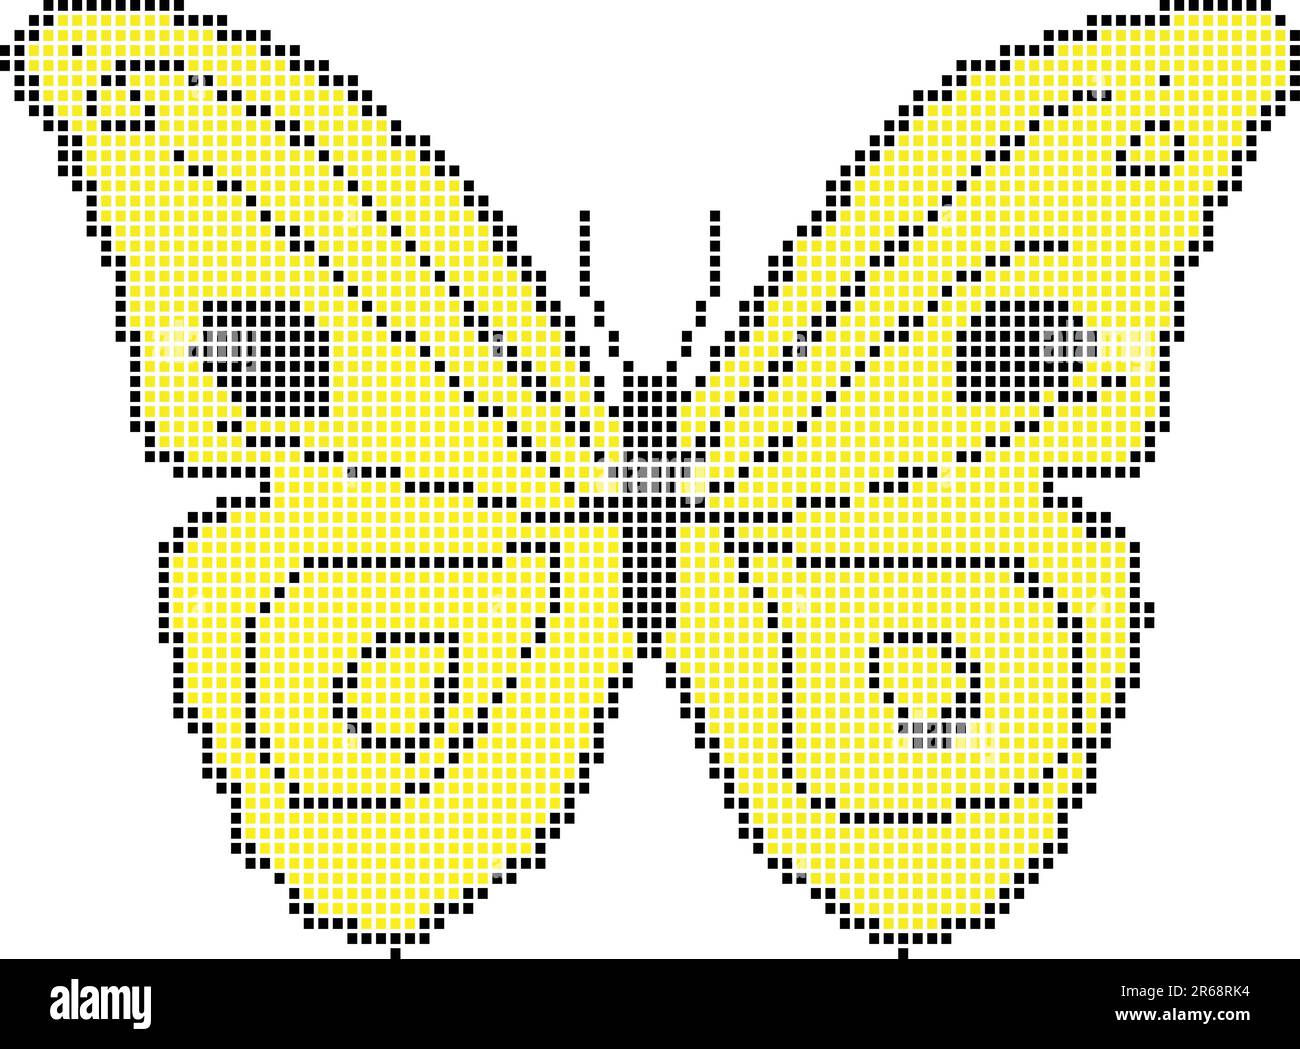 papillon jaune - vecteur Illustration de Vecteur